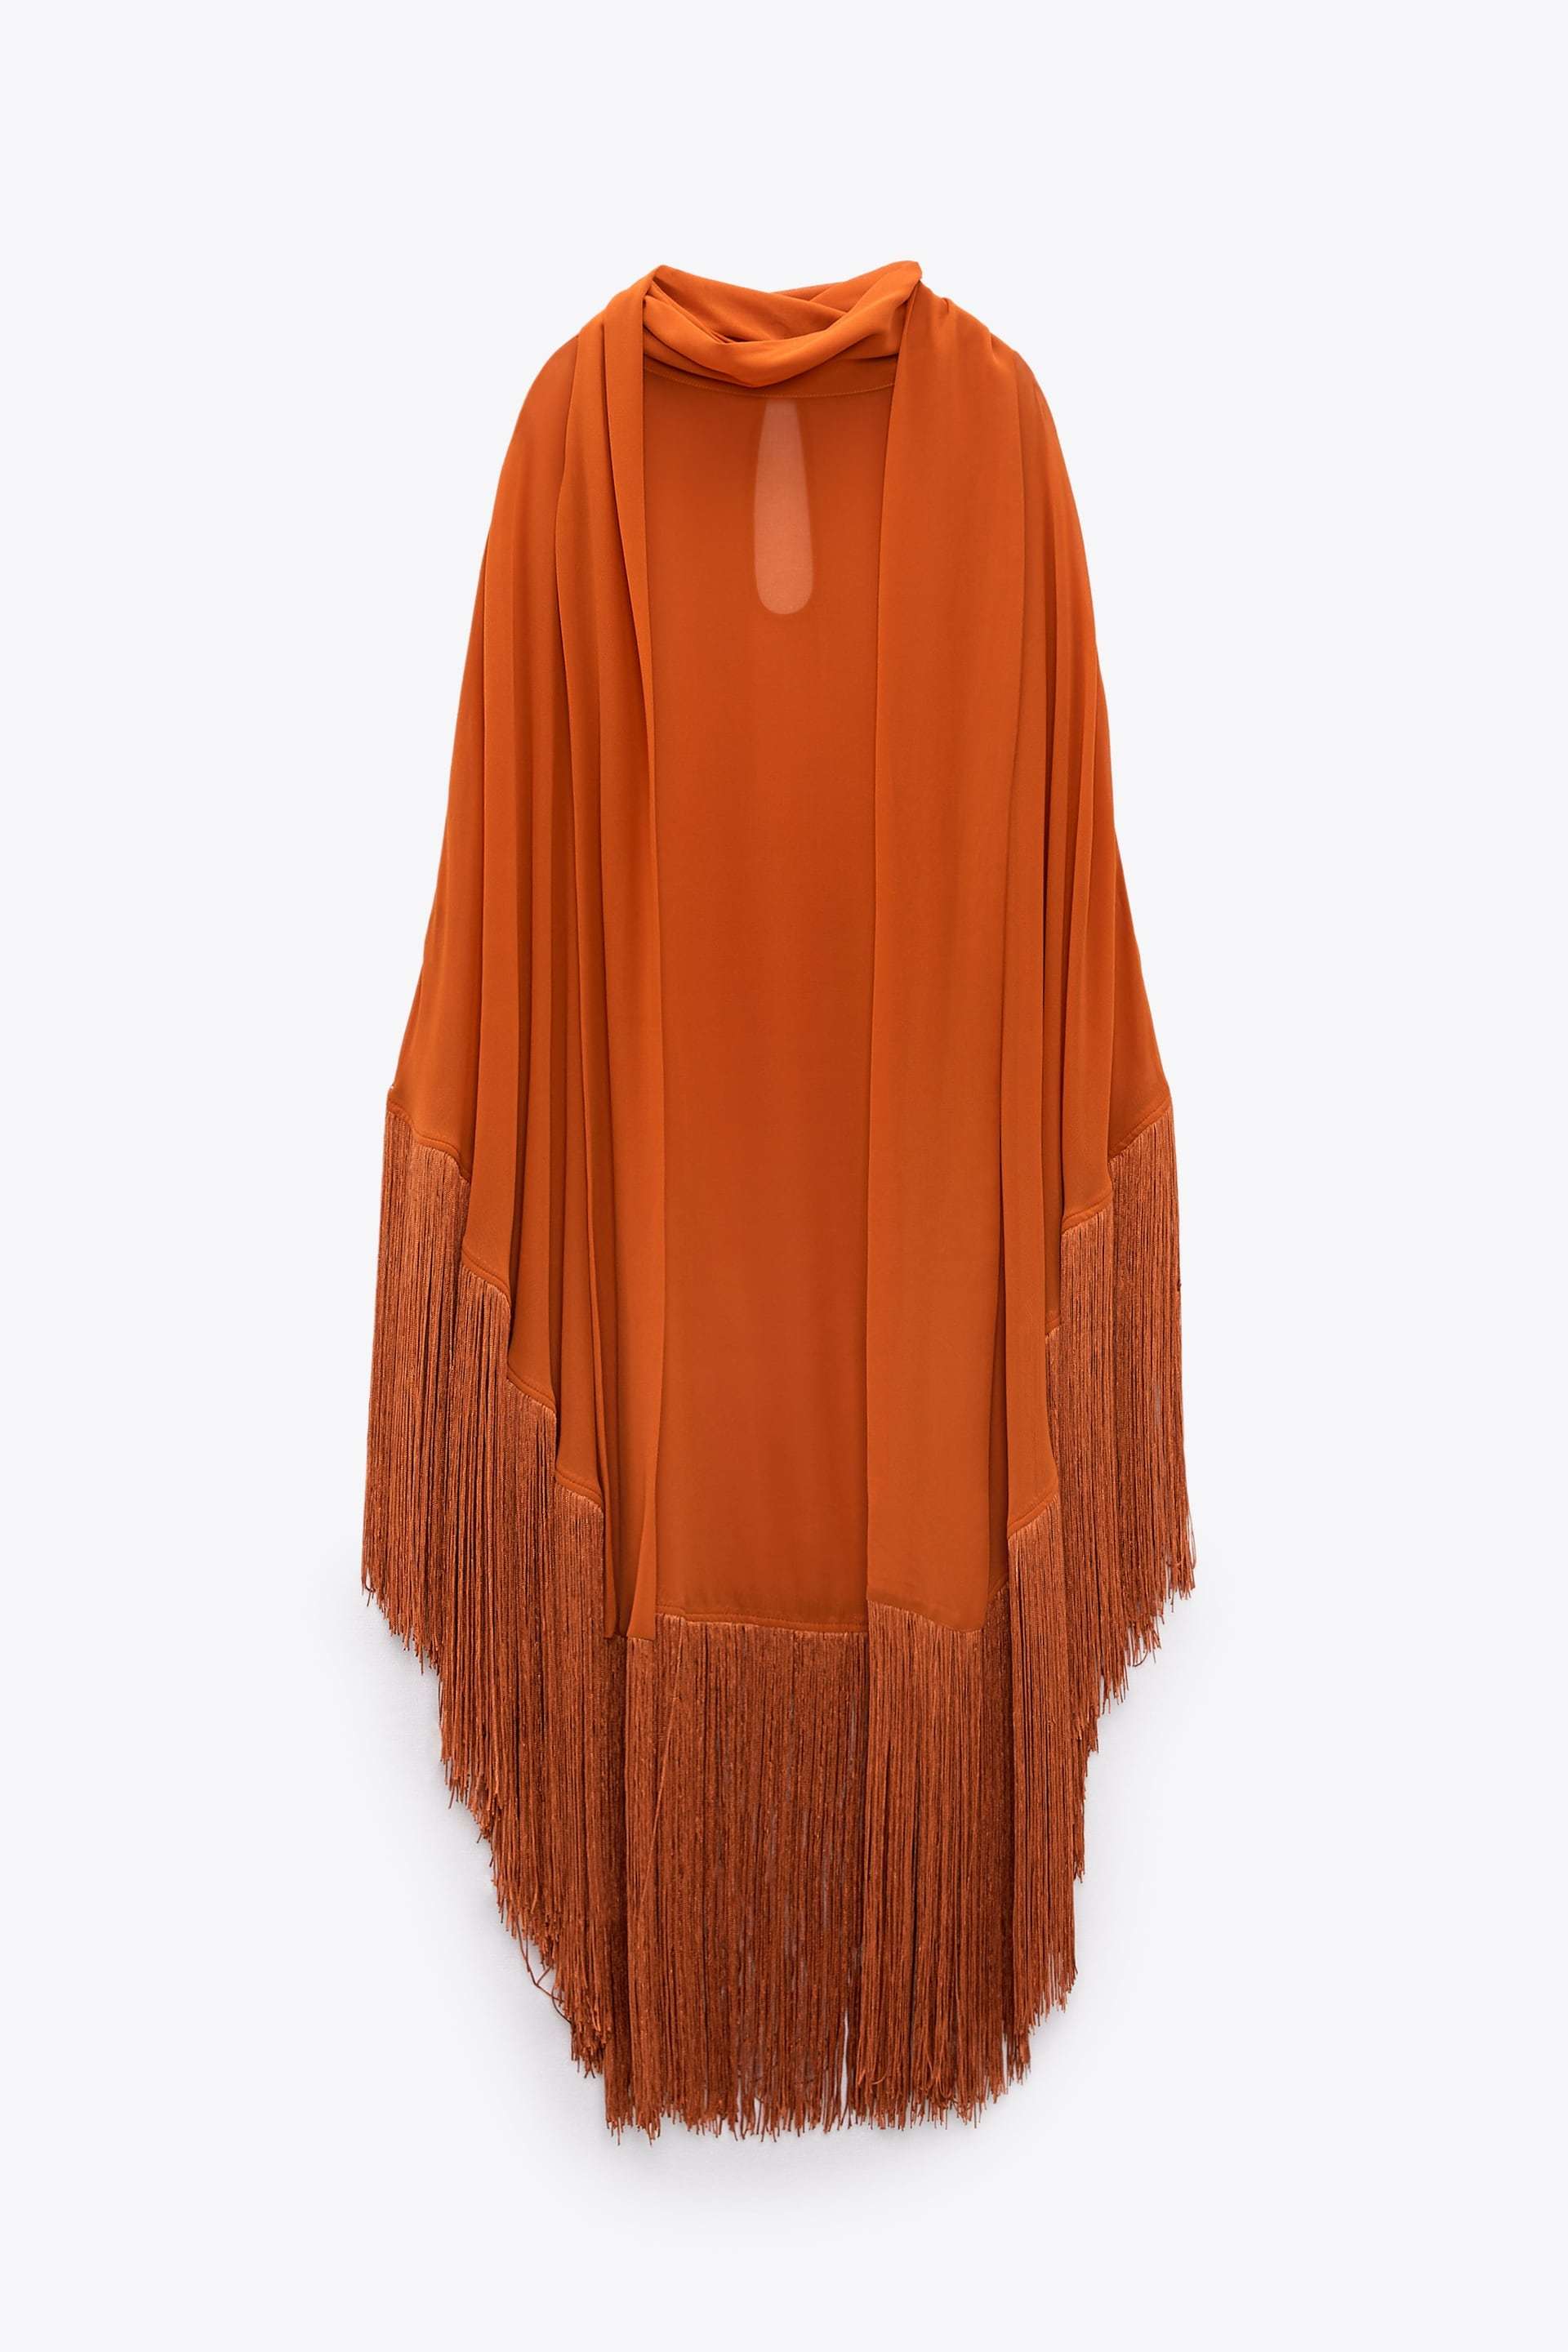 Capa vaporosa en color naranja a la venta en Zara (59,95 euros).